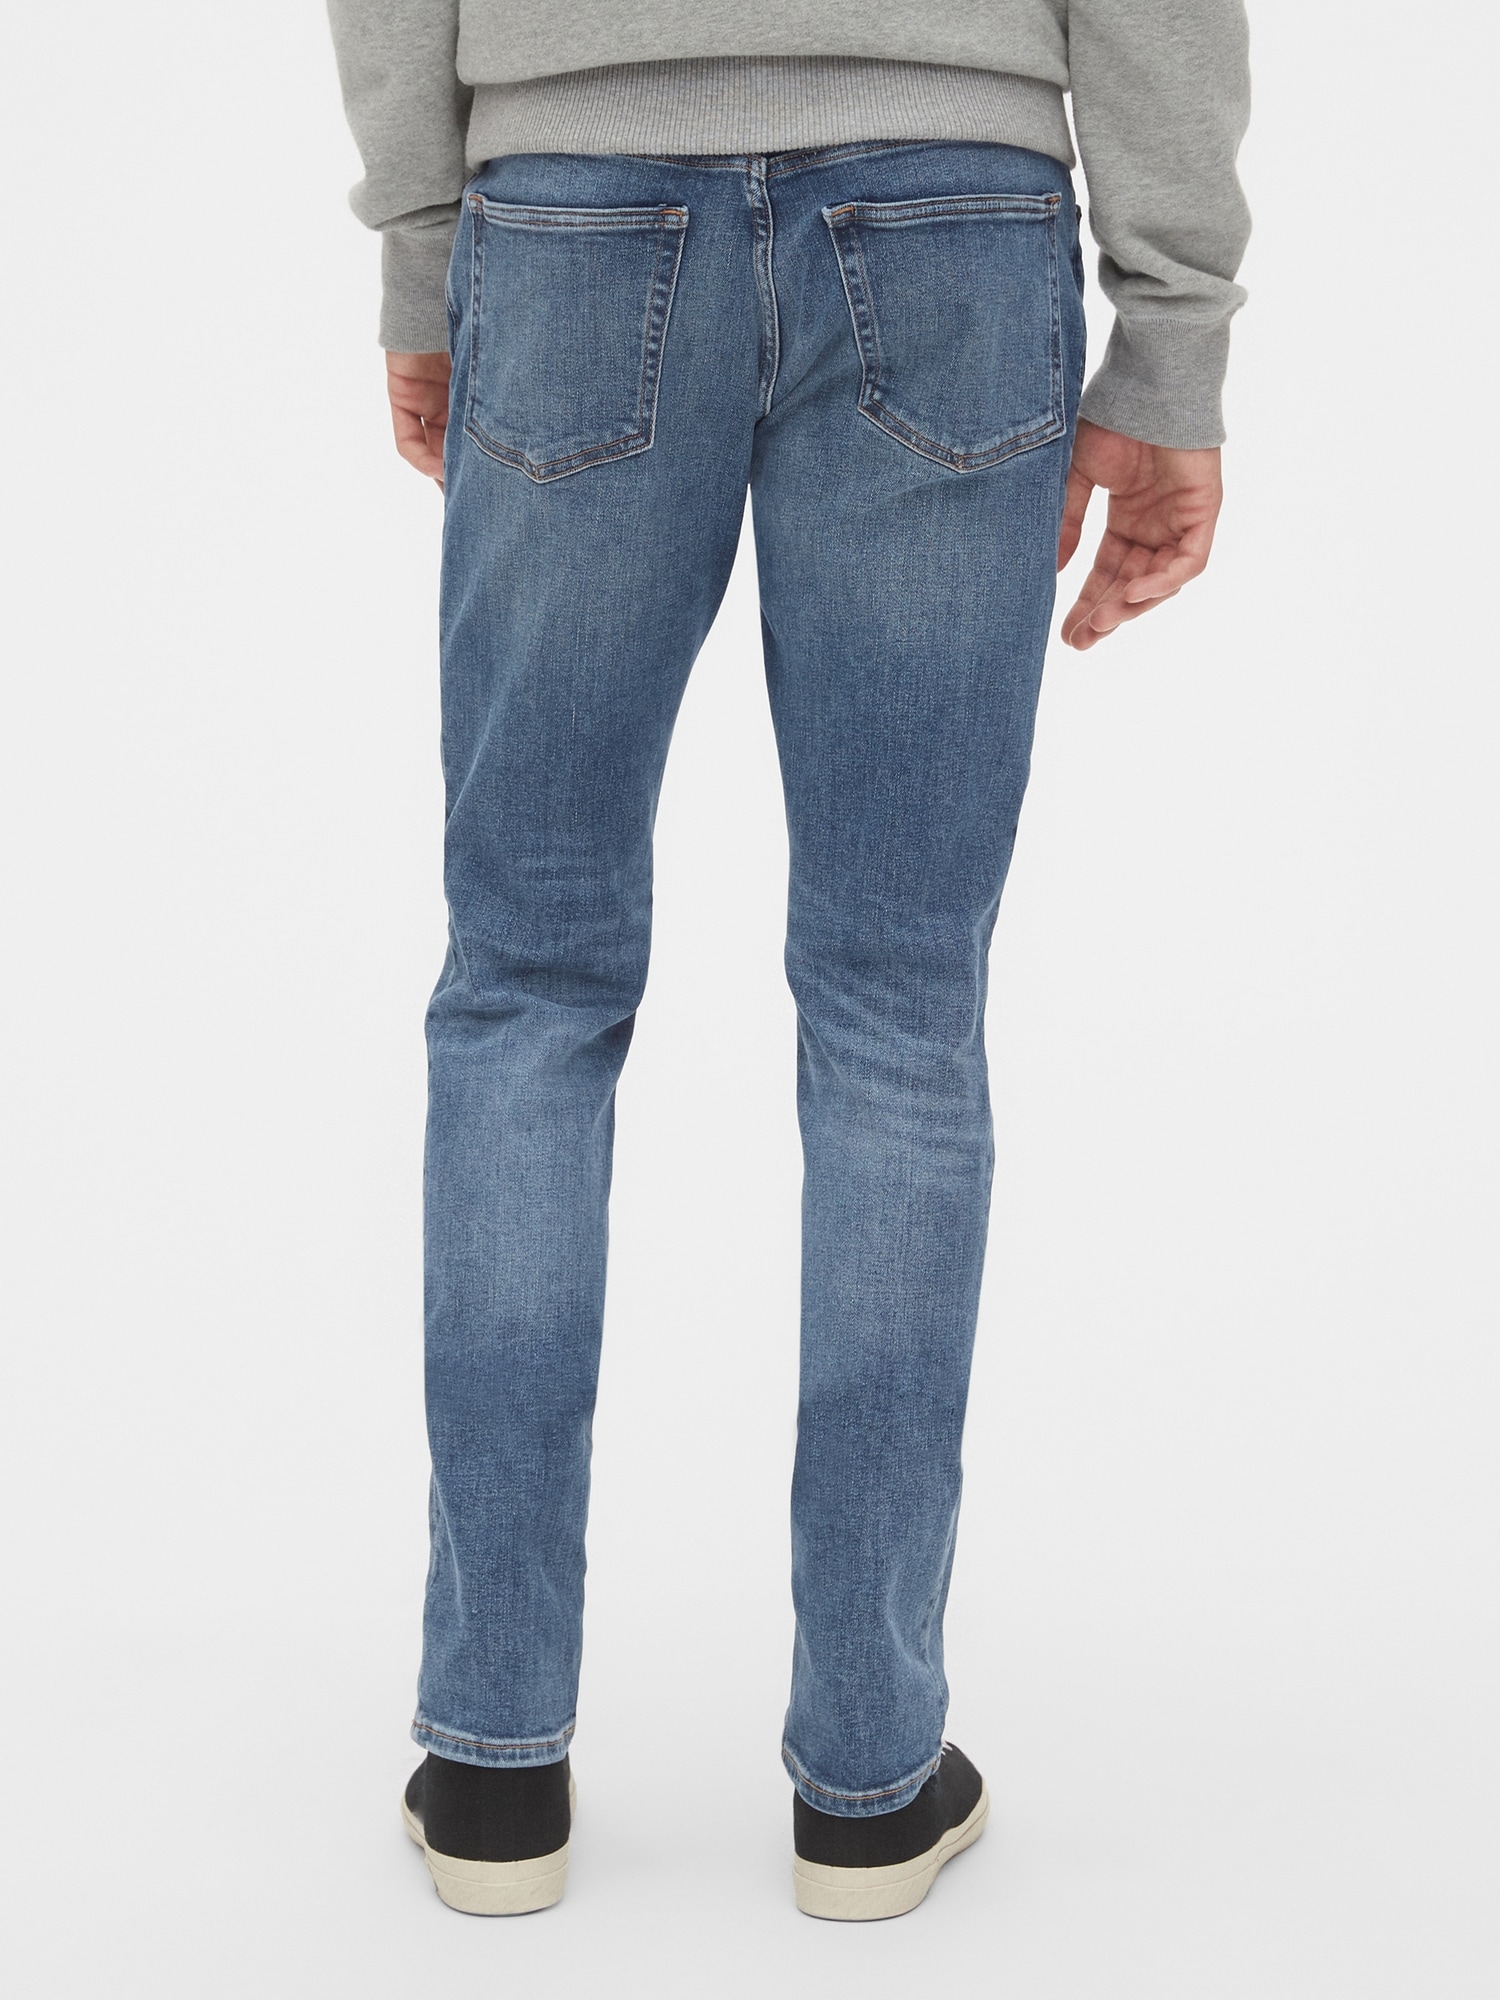 gap men's skinny jeans